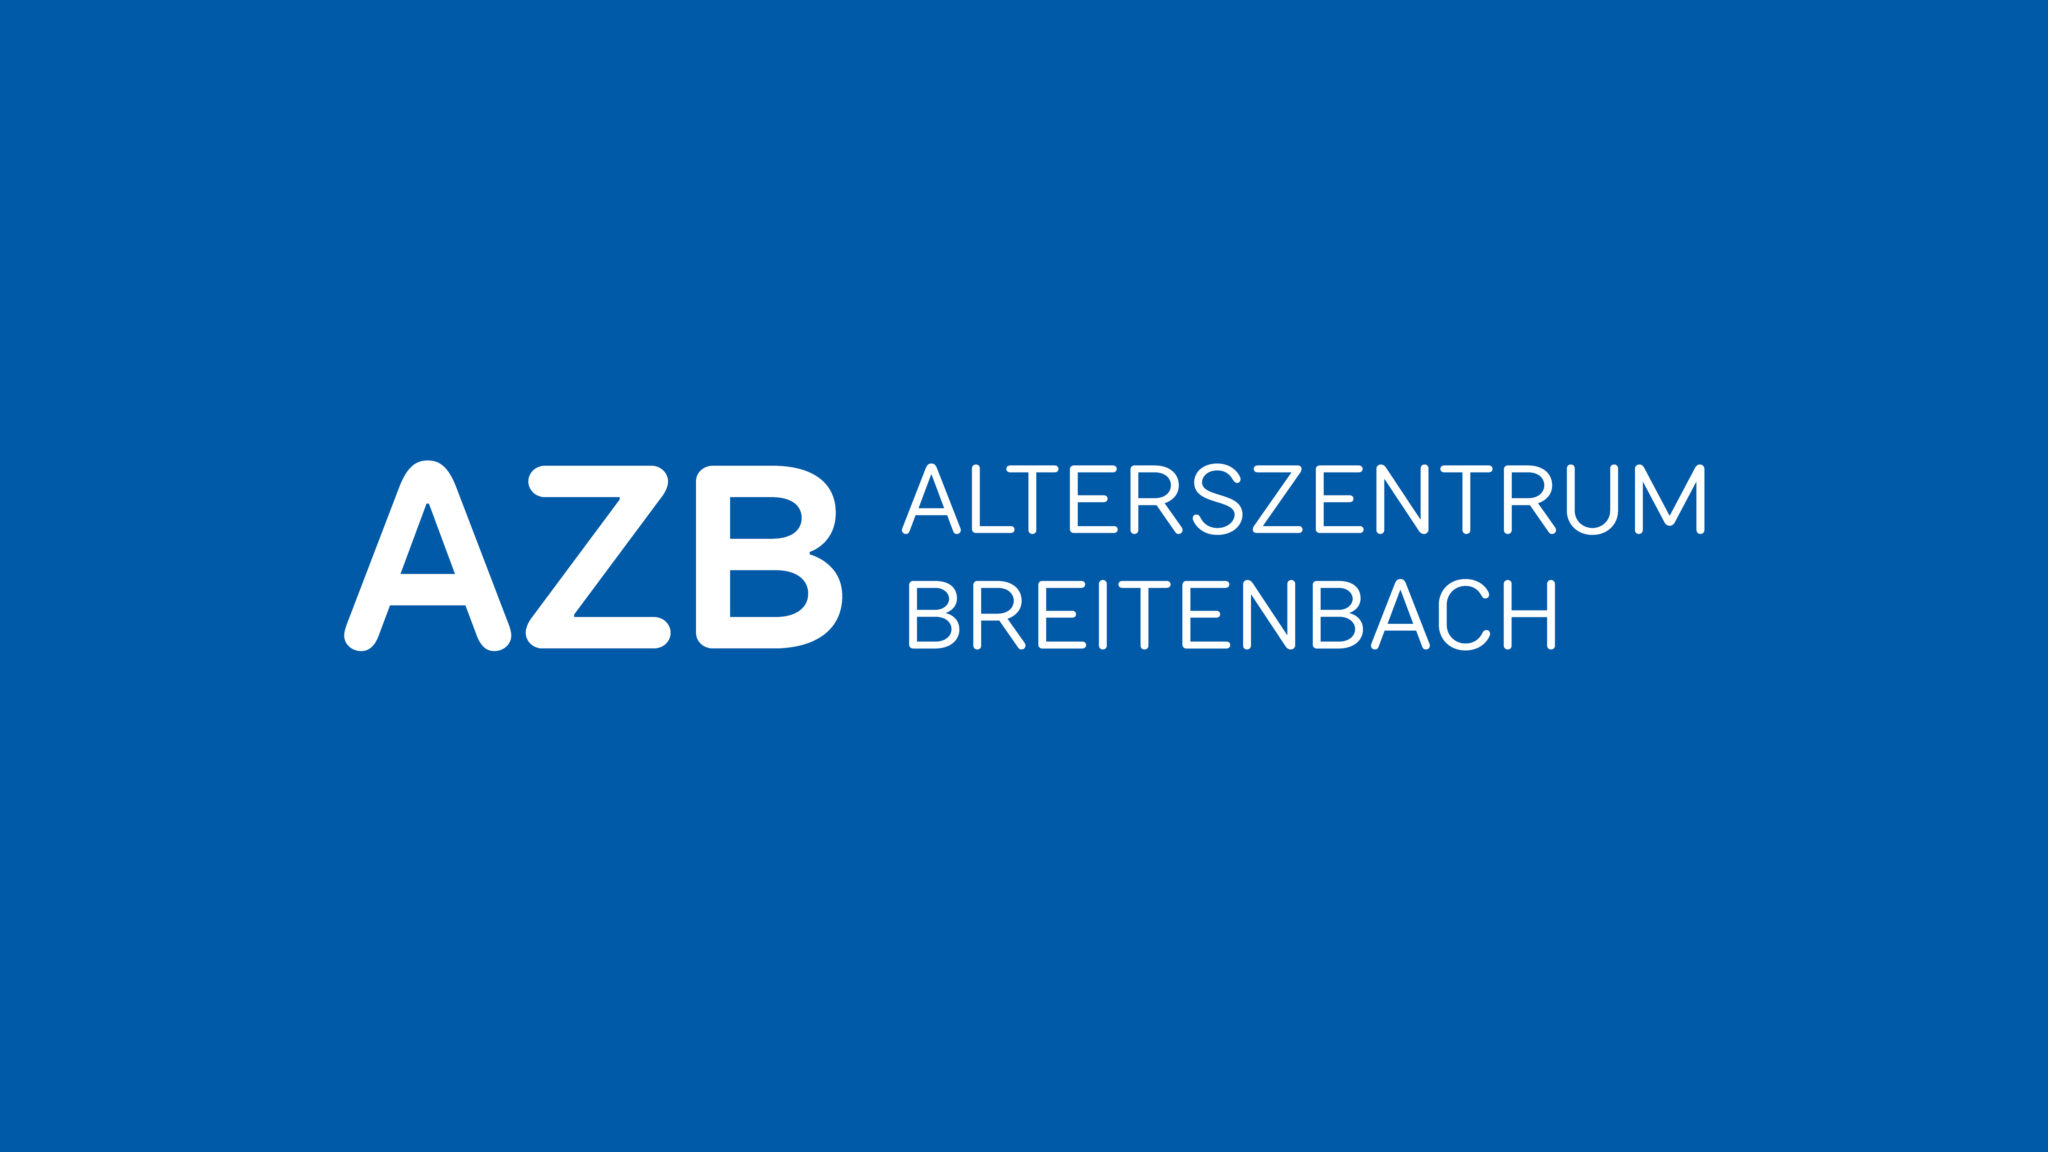 Logo-Design für das Alterszentrum Breitenbach. Weisse Schrift auf blauem Grund.